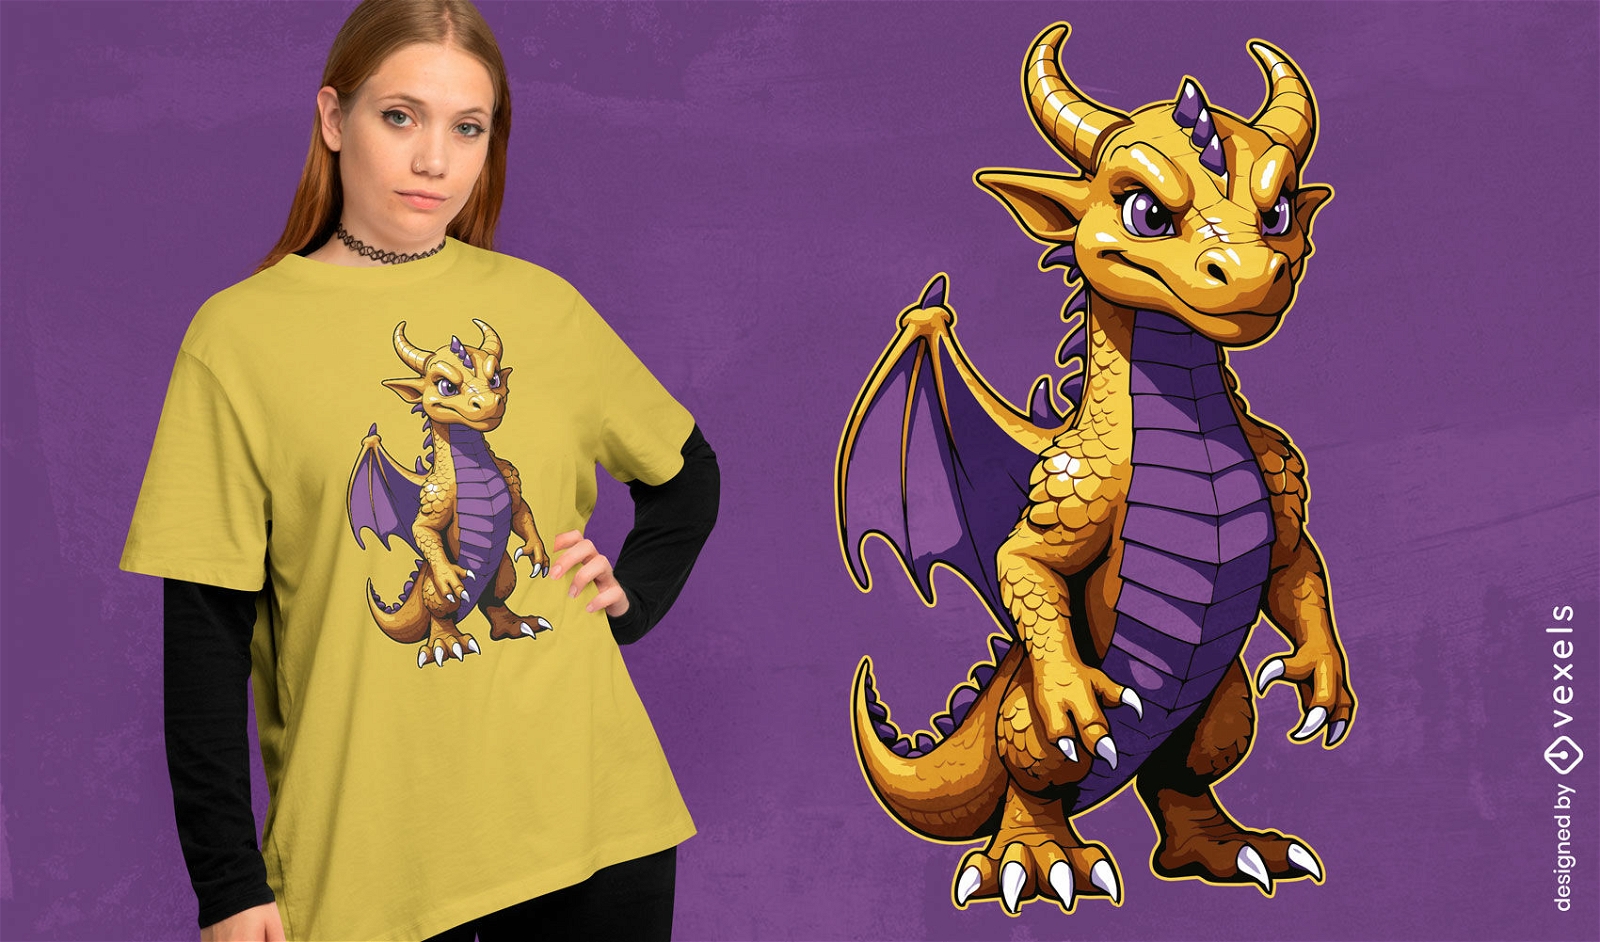 Playful golden dragon t-shirt design